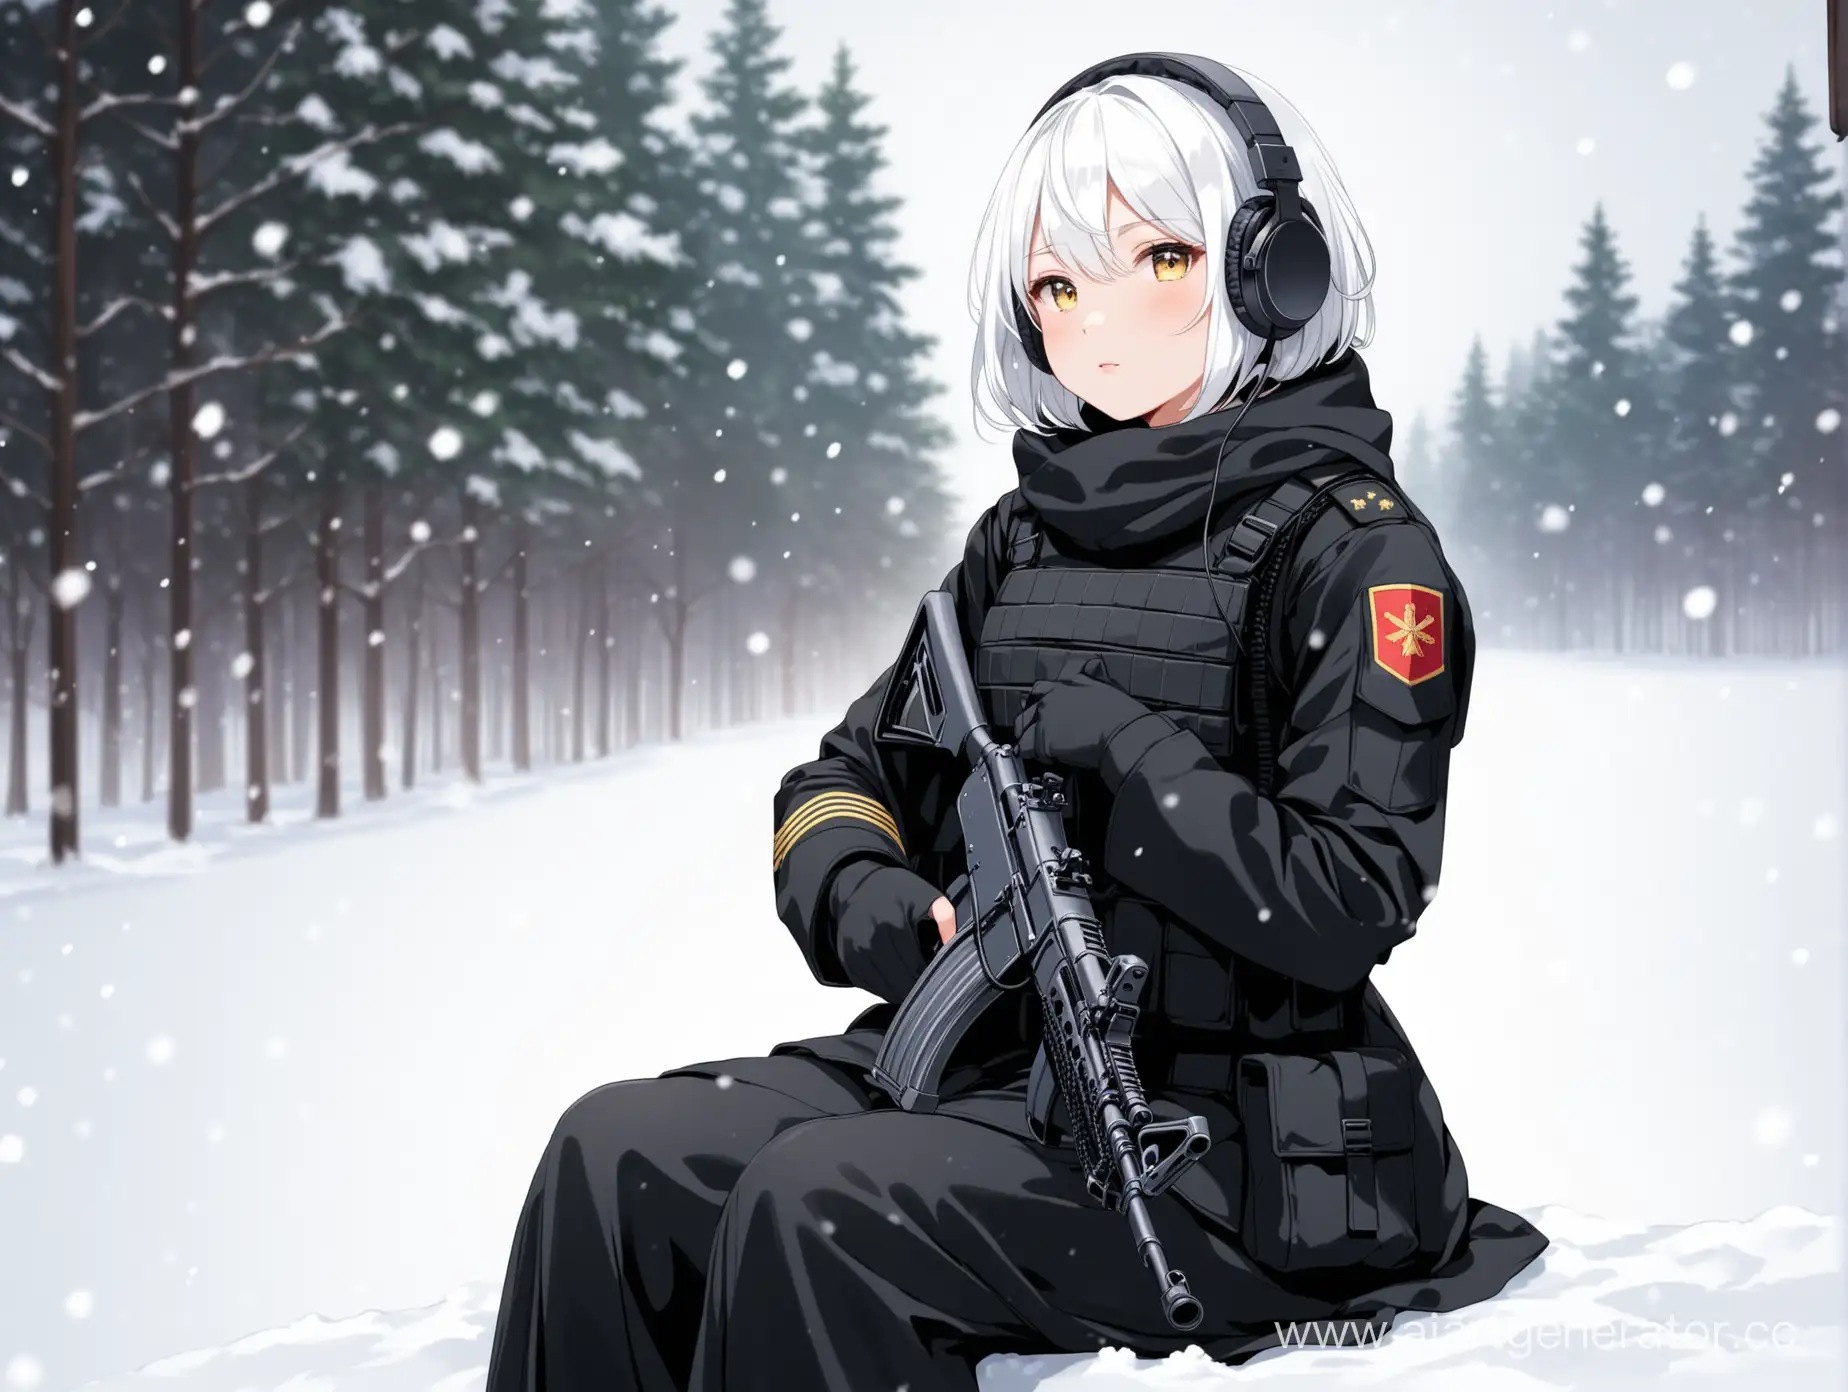 Сидит девушка с белыми короткими волосами ростом 170см в черной военной форме с активными наушниками и АК в руках на фоне снега